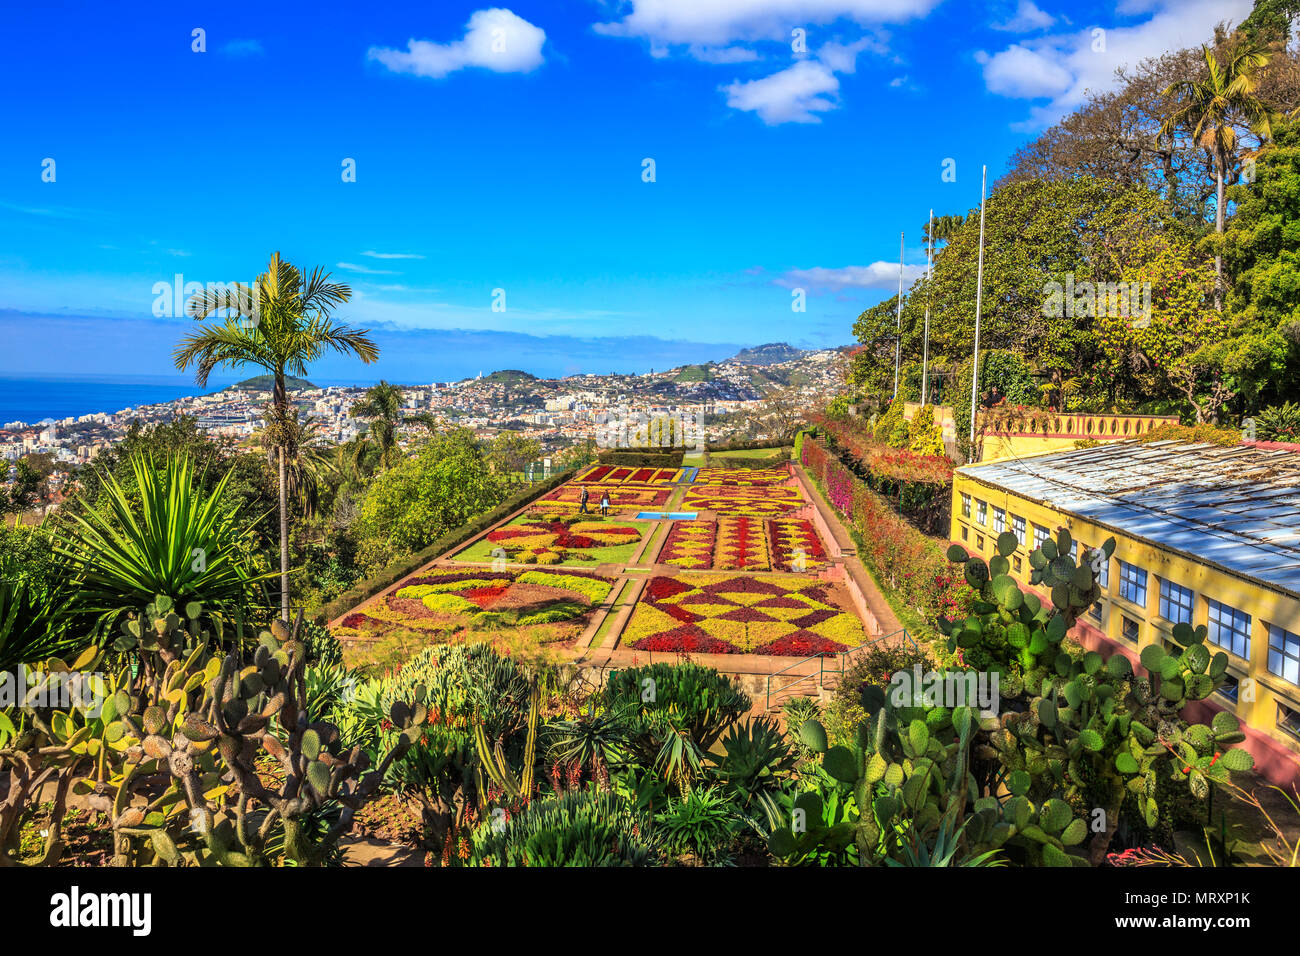 Bellissimo panorama del famoso giardino botanico e tropicale a Funchal, isola di Madeira, Portogallo Foto Stock